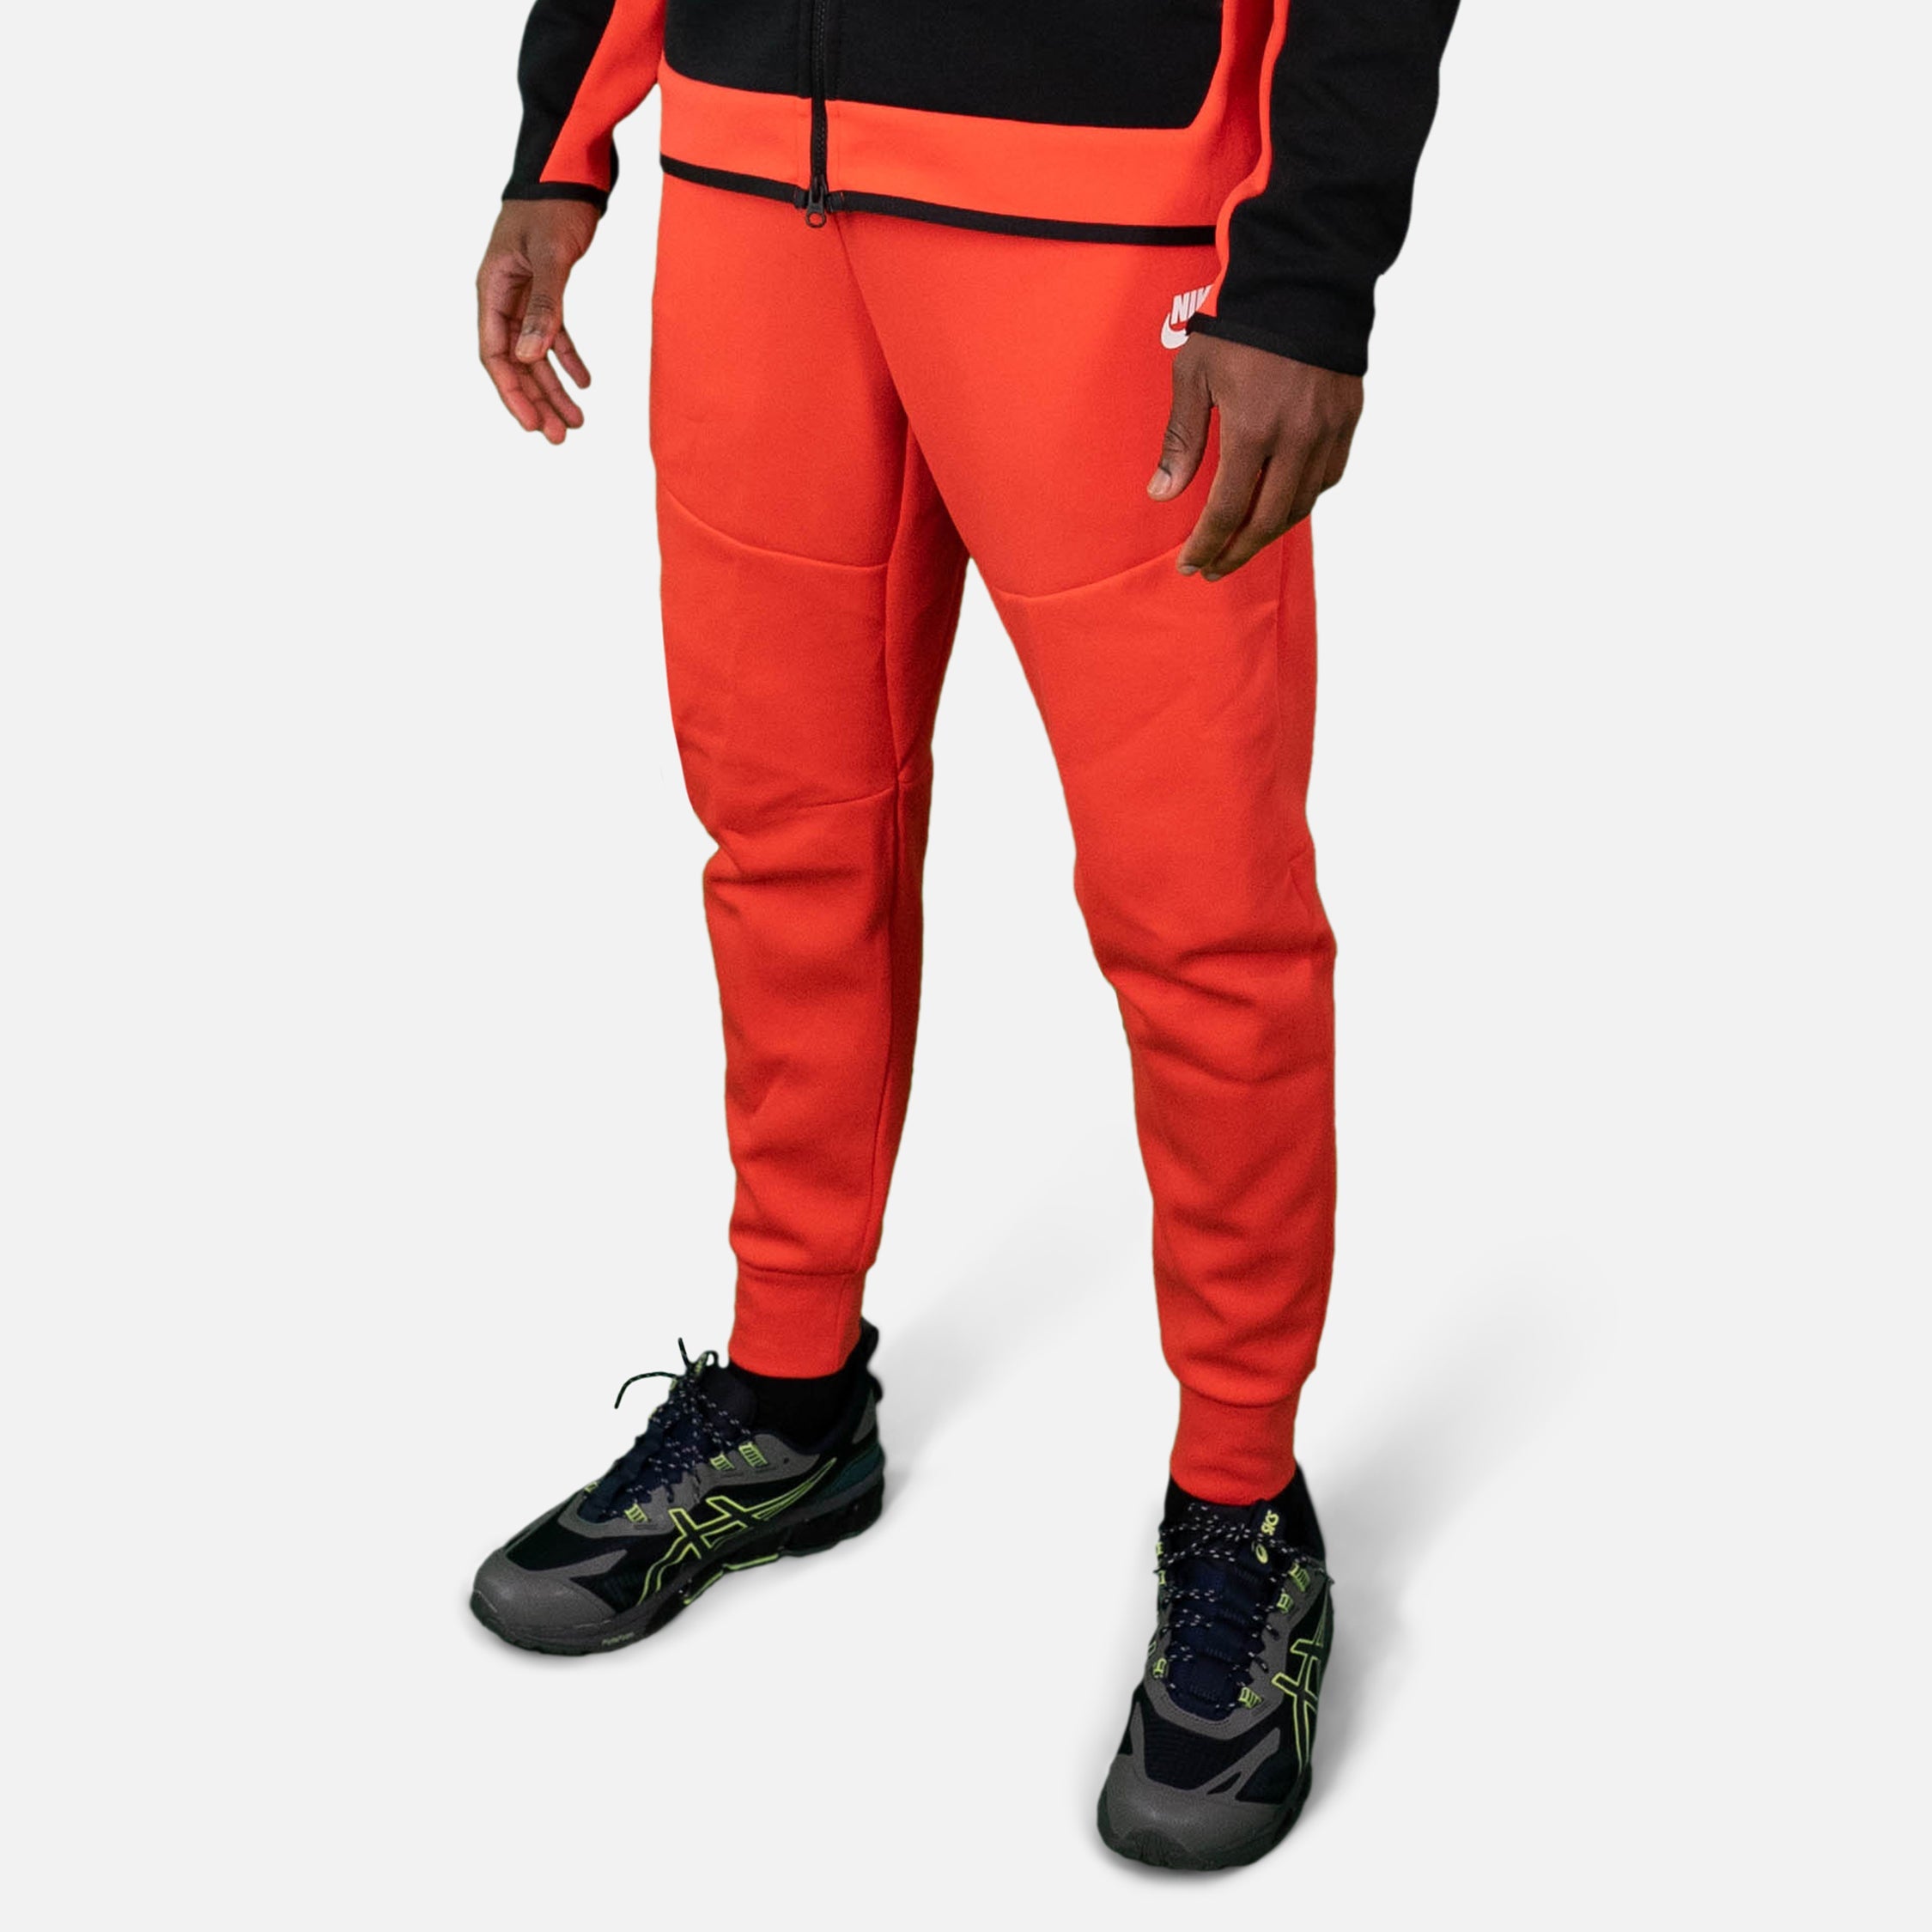 Joggers Nike Sportswear Tech Fleece - Rosso/Nero